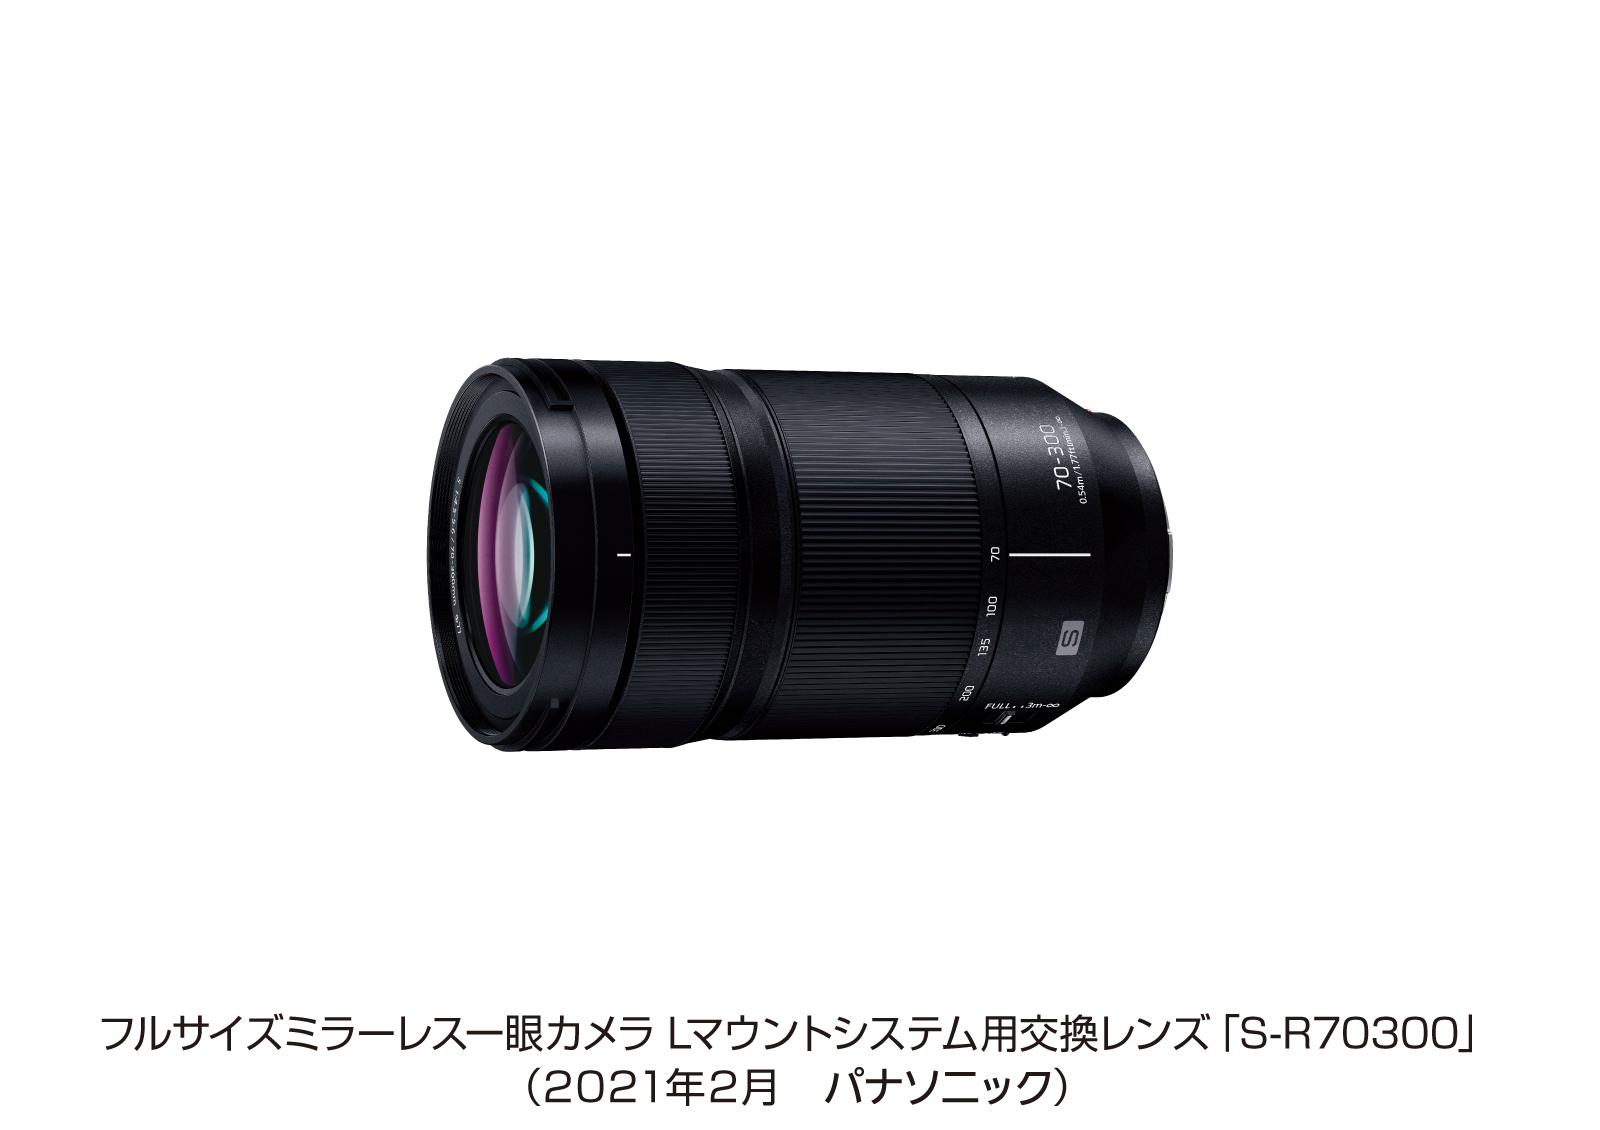 フルサイズミラーレス一眼カメラ Lマウントシステム用交換レンズ S-R70300